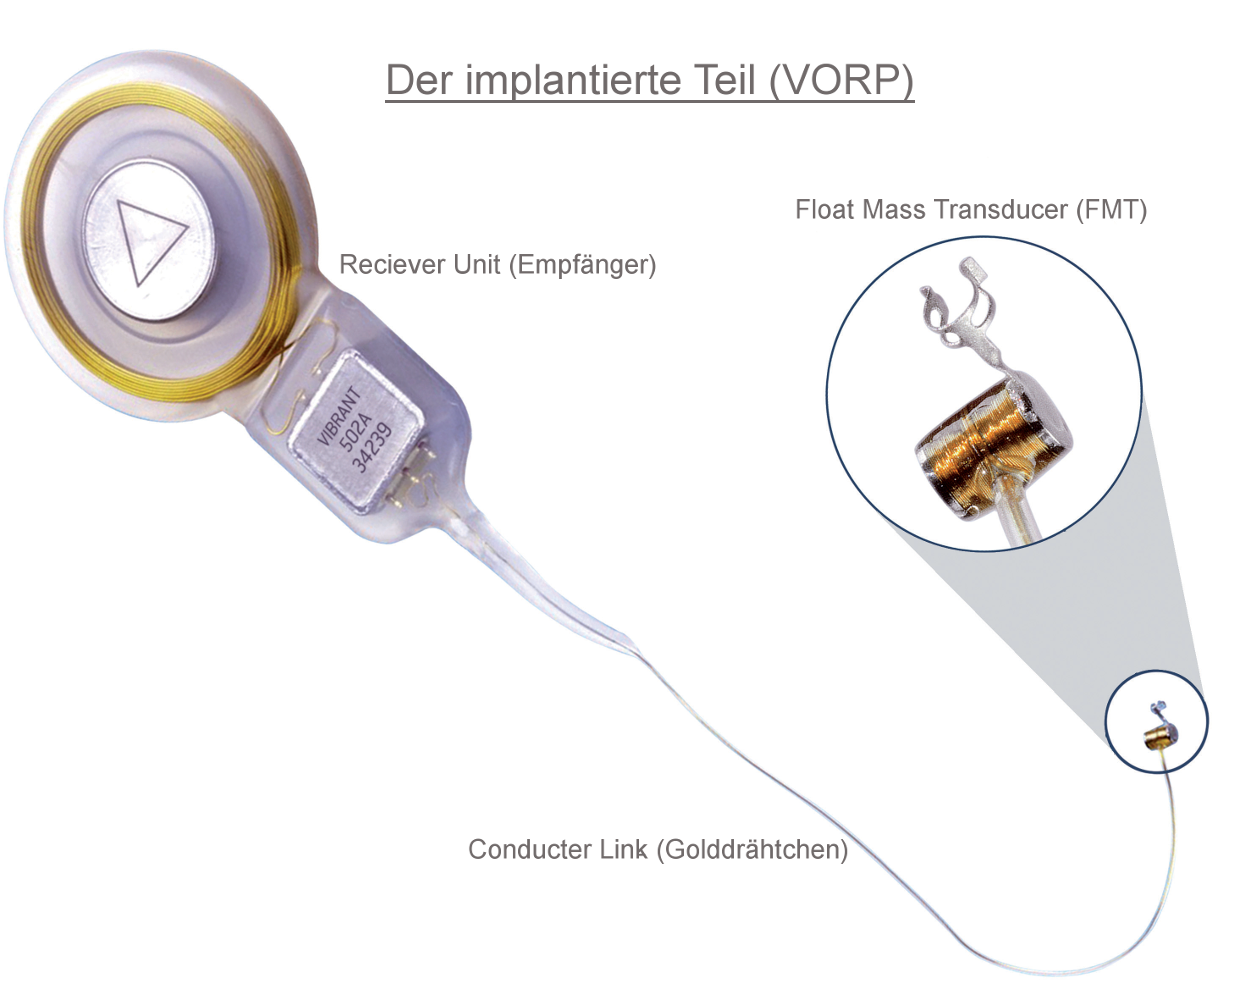 Die implantierte Komponente (VORP)